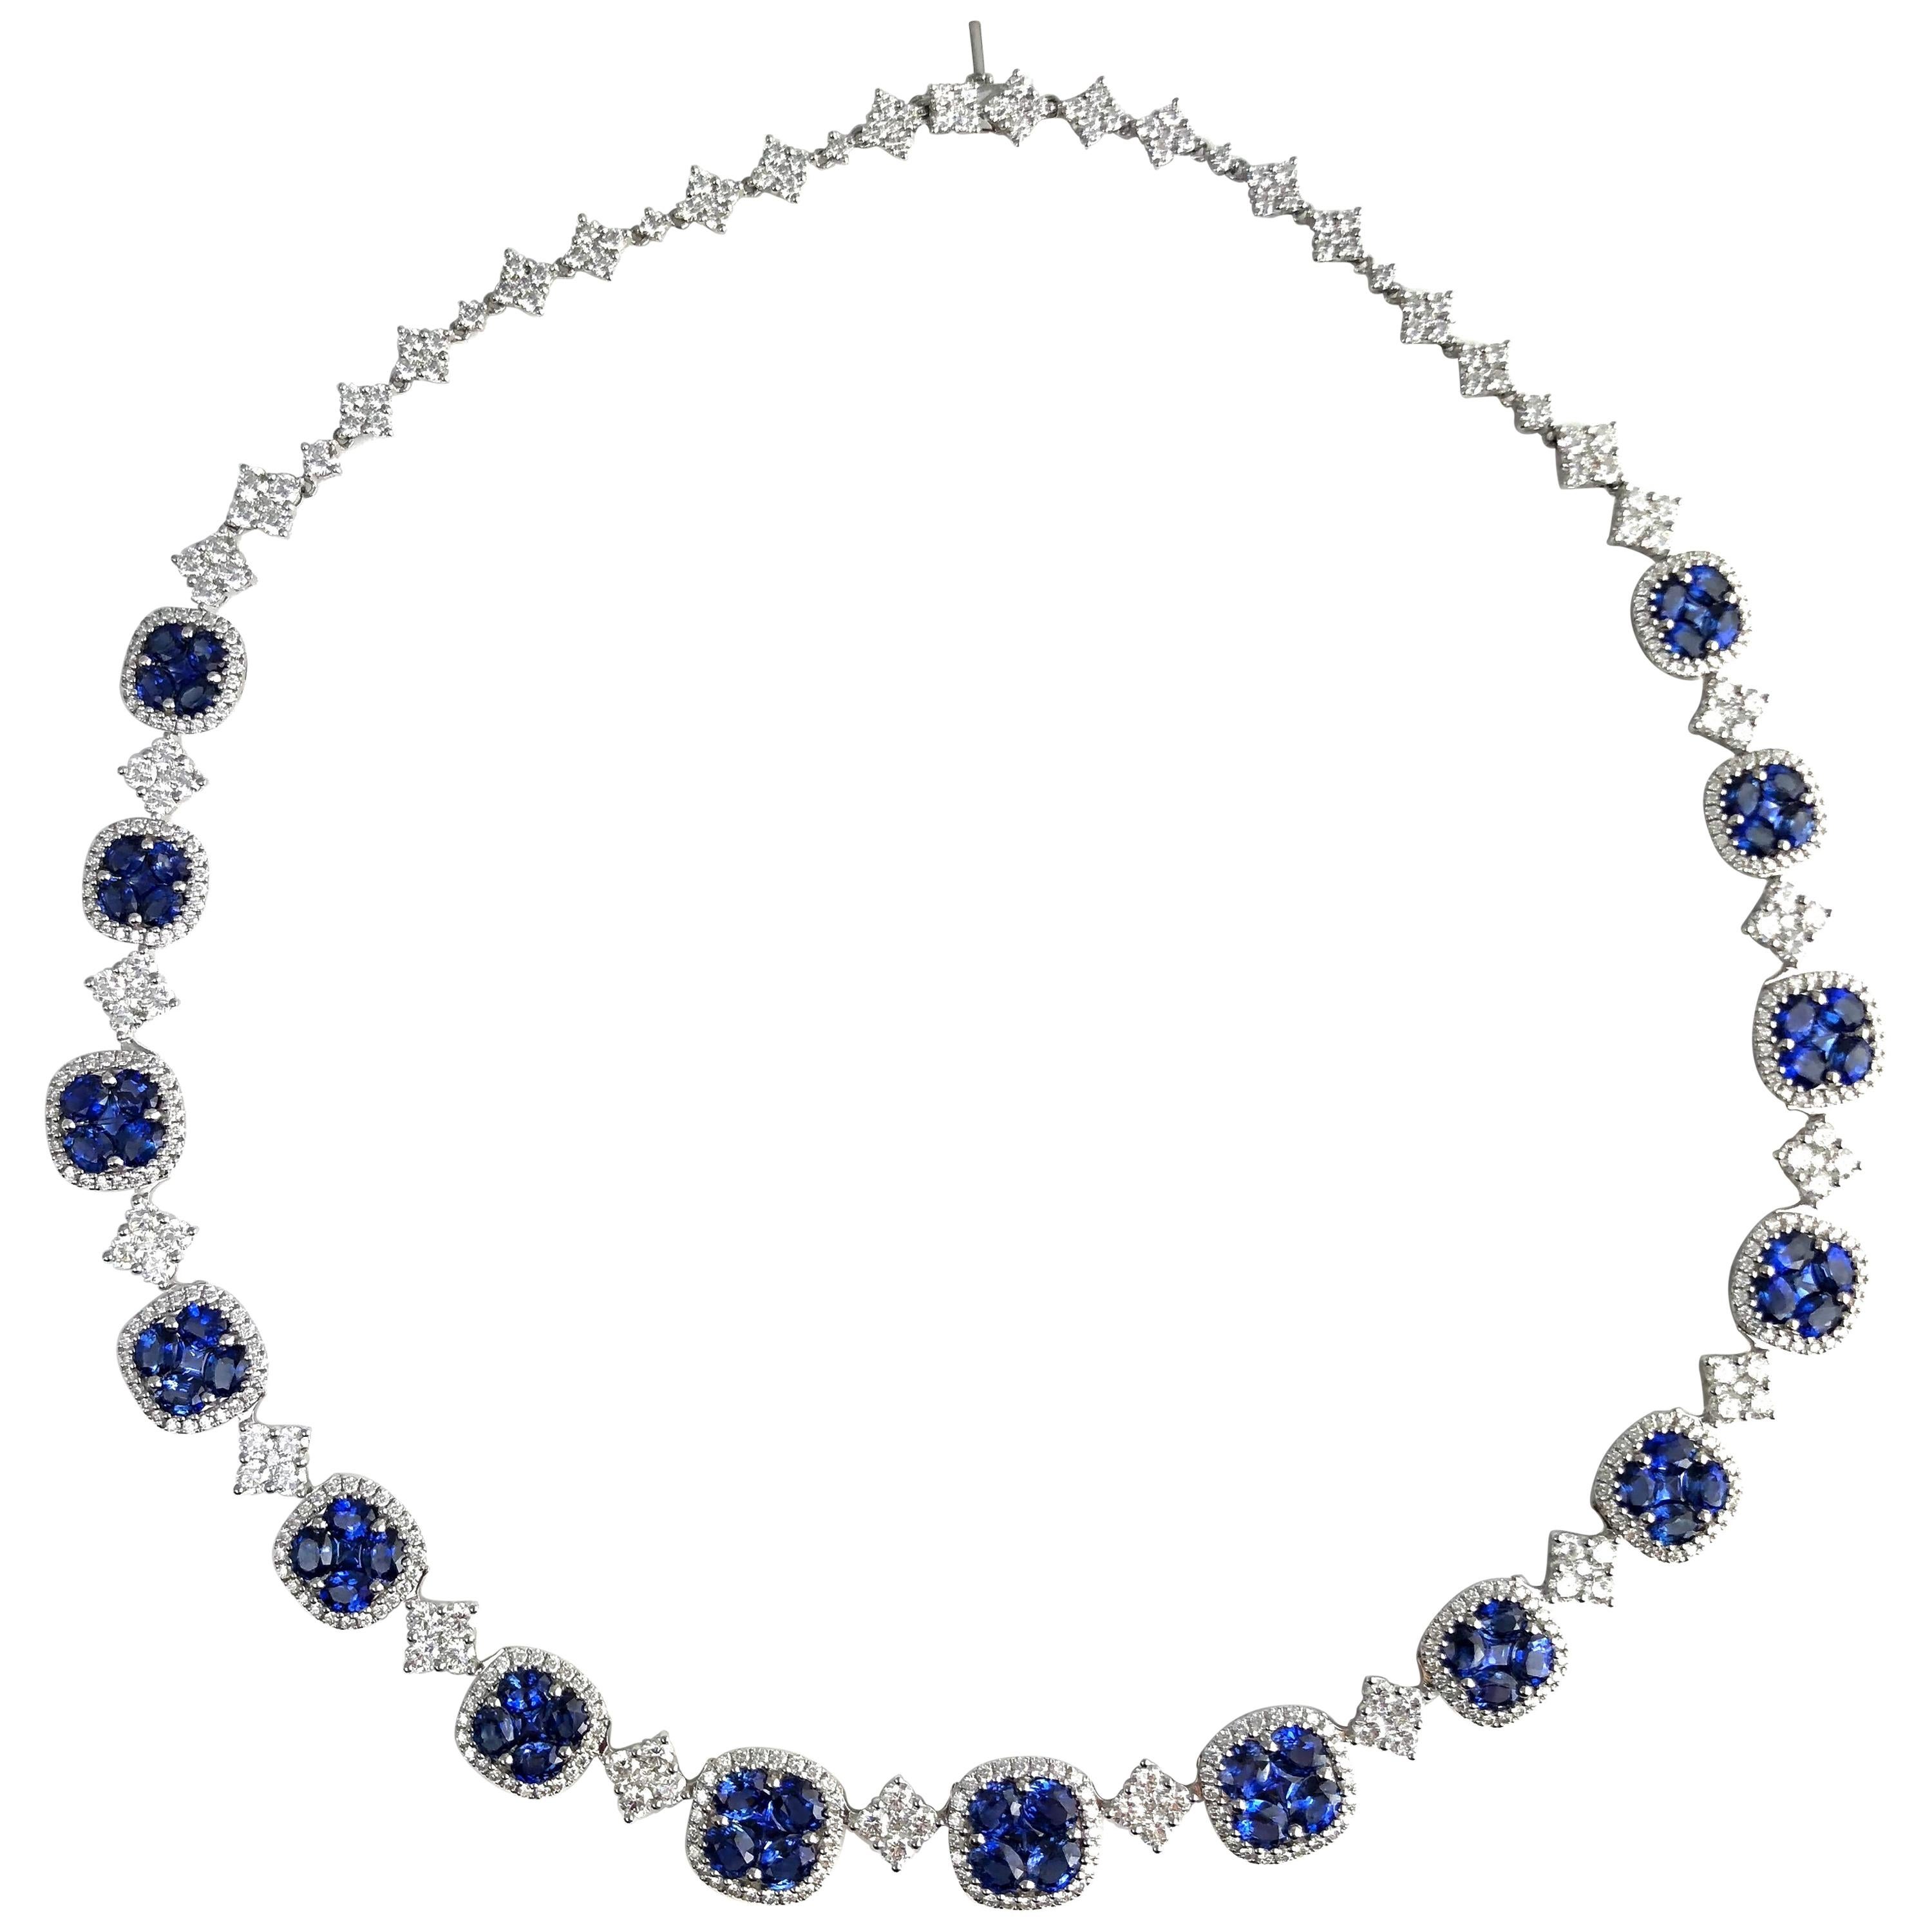 DiamondTown 21.23 Carat Vivid Blue Sapphire and Diamond Necklace